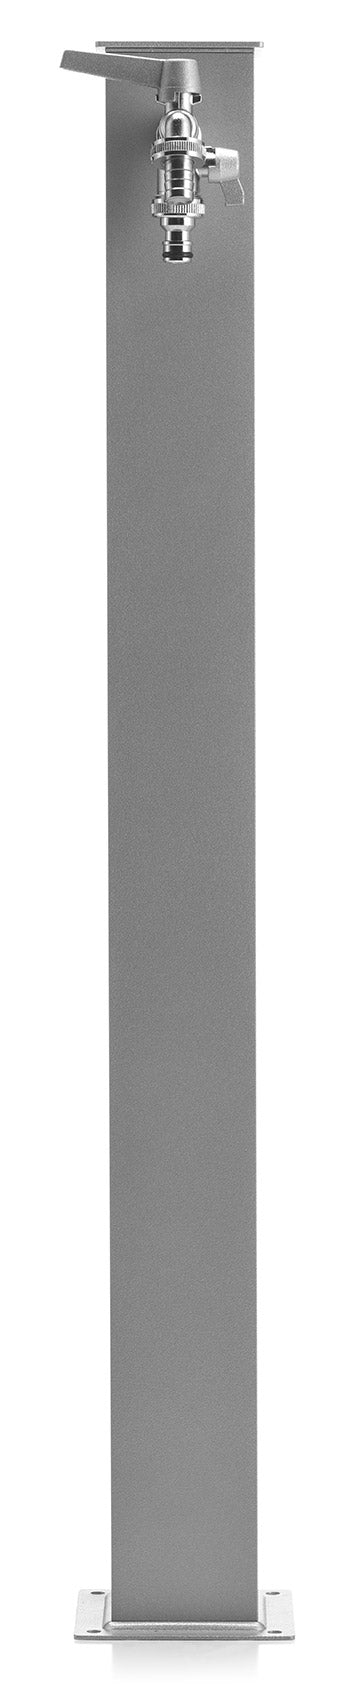 Fontana da Giardino con Doppio Rubinetto Belfer 42/QRR Alluminio-3